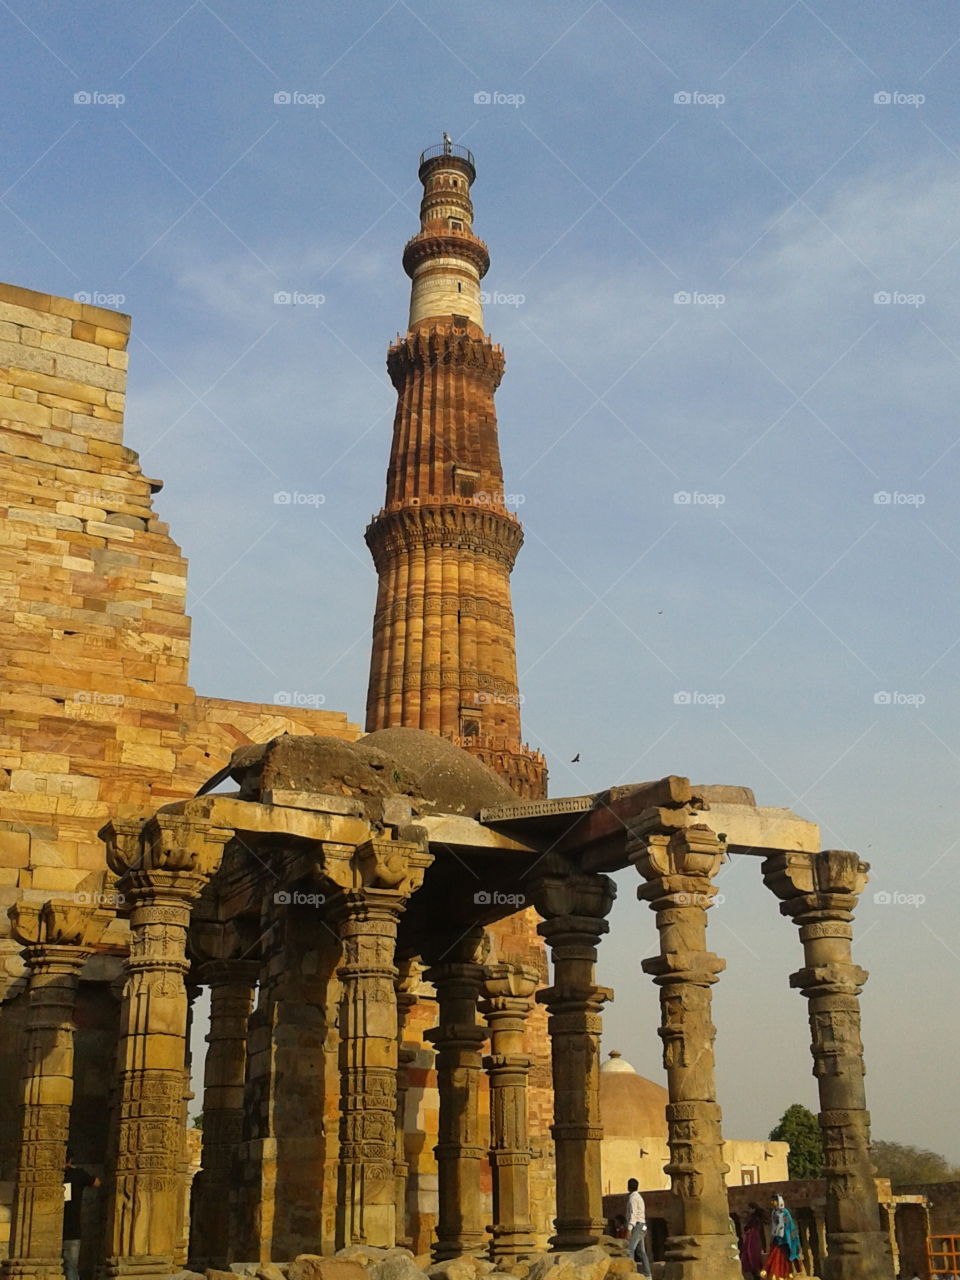 Kutub minar, Delhi, India